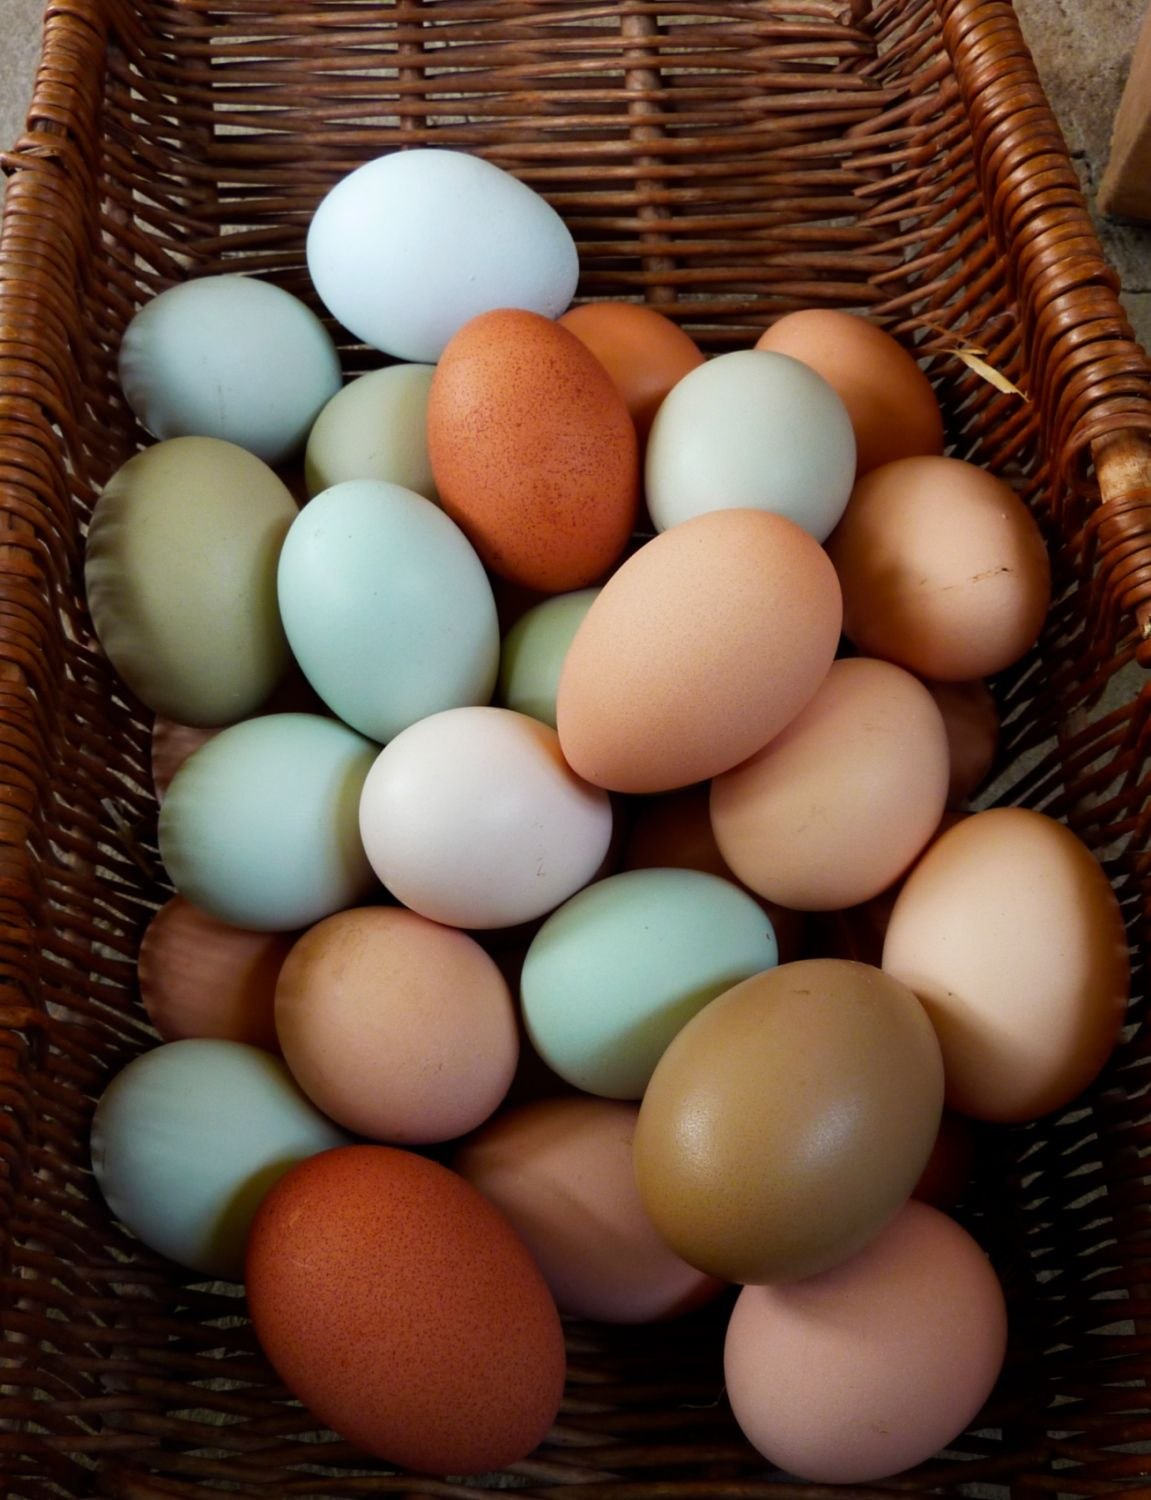 Купить яйца курей